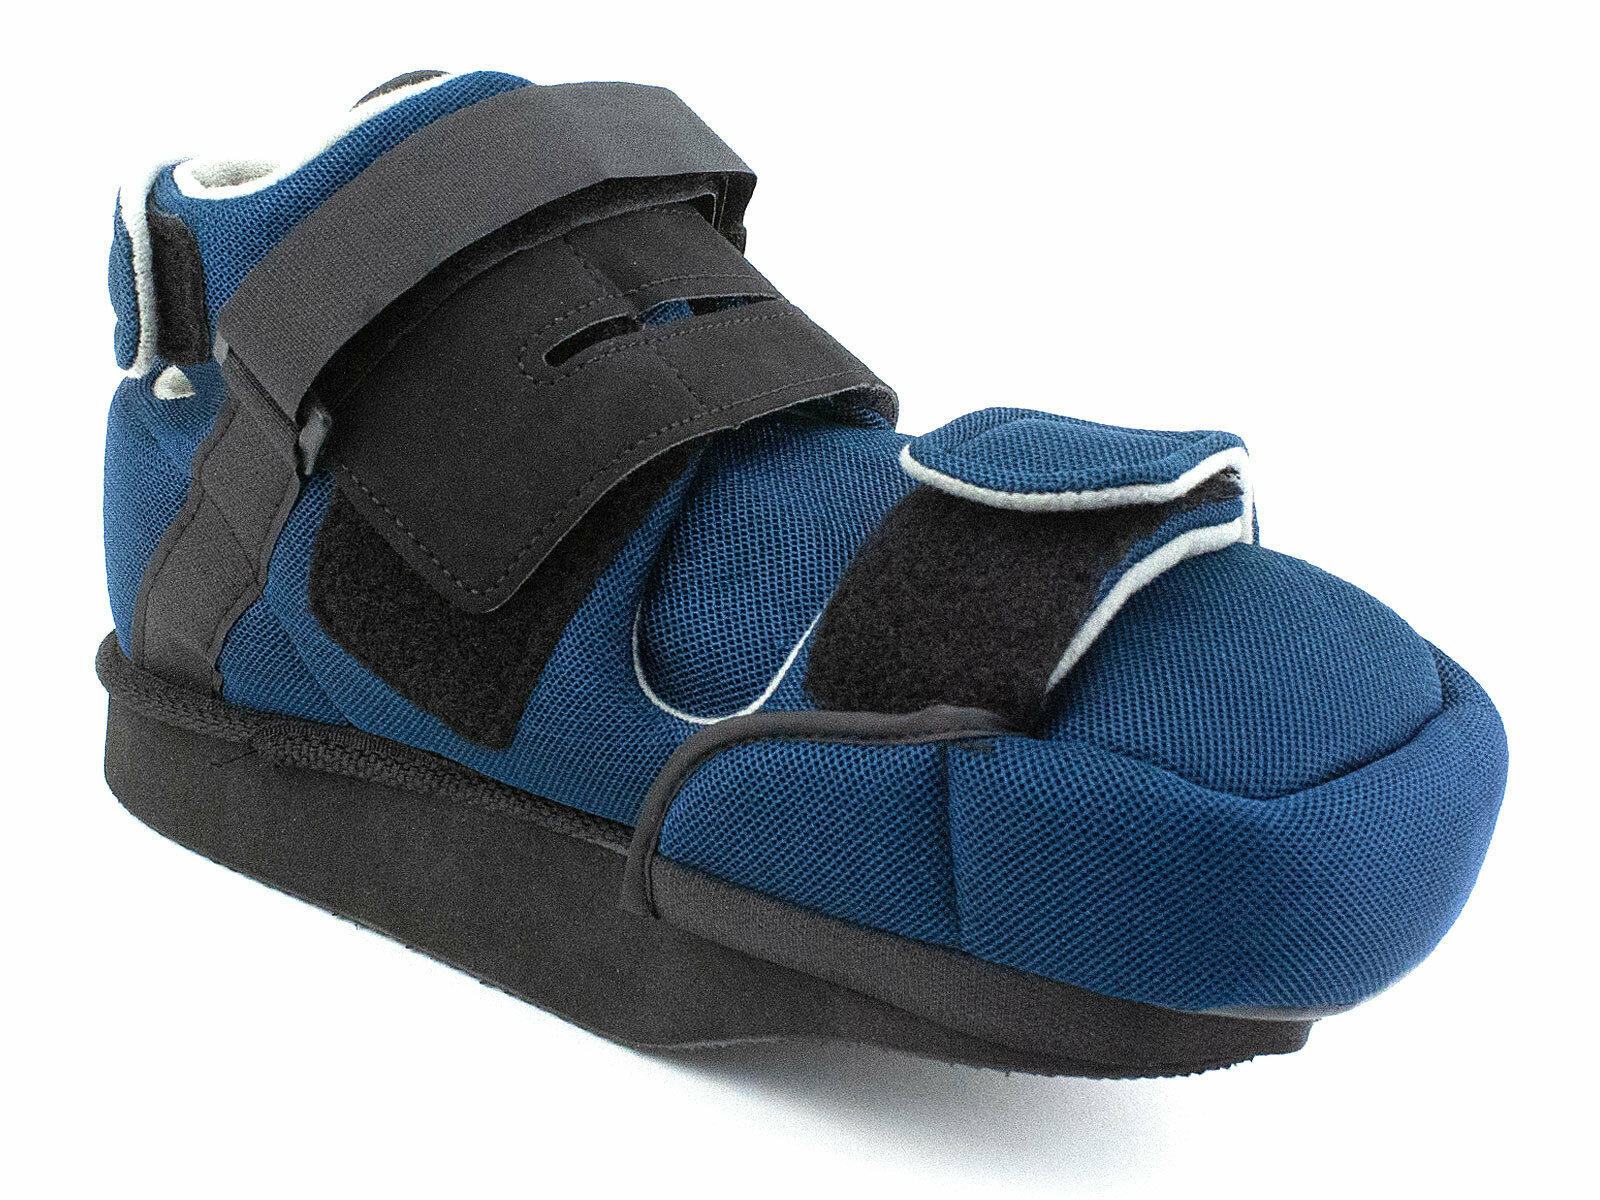 09-101 Сурсил-орто барука для переднего отдела стопы обувь послеоперационная терапевтическая со съемным чехлом синий. Цена за 1 полупарок